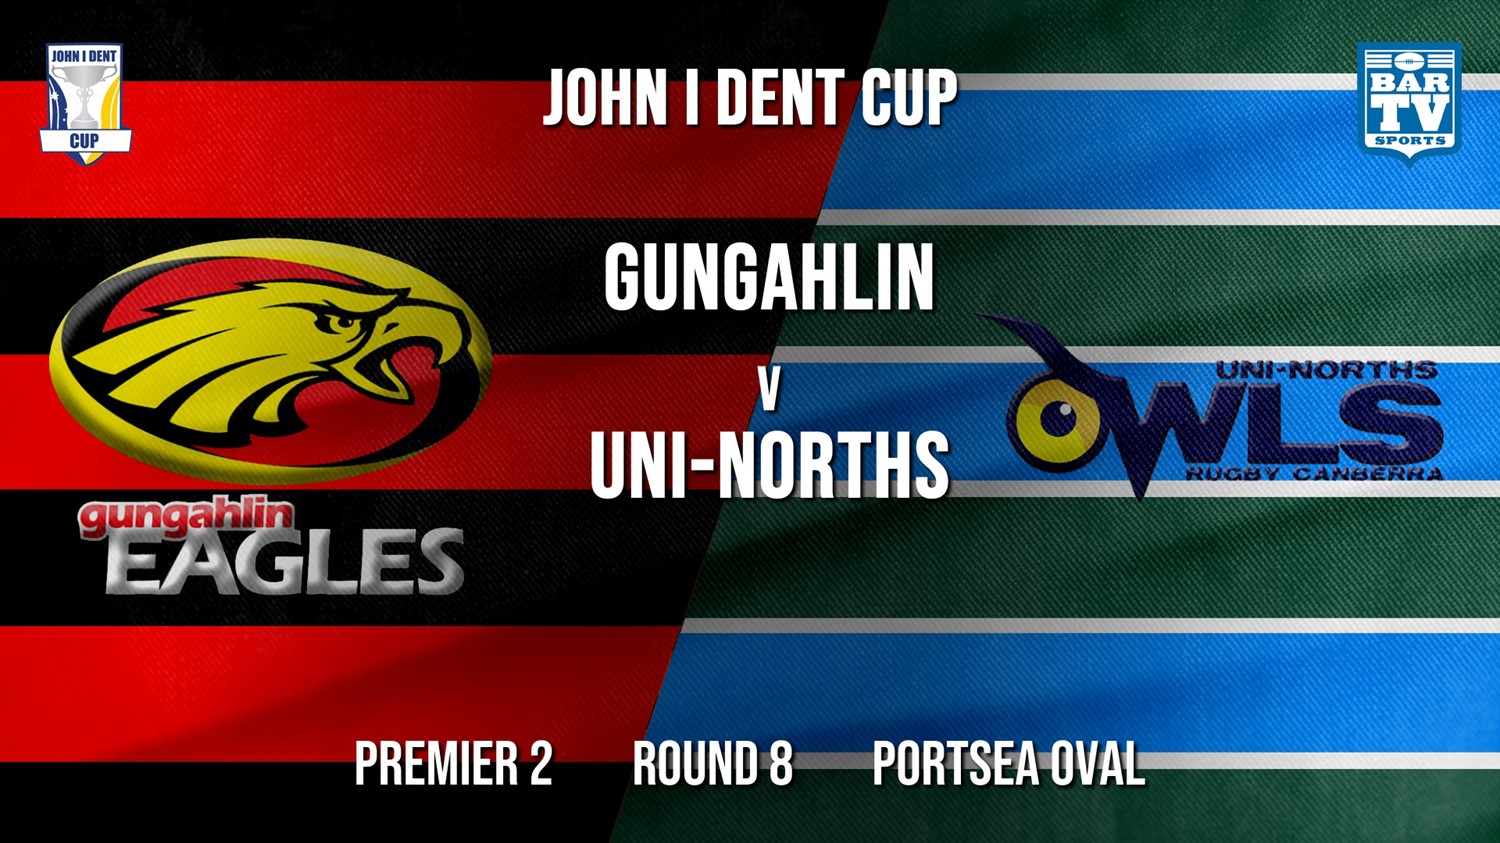 John I Dent Round 8 - Premier 2 - Gungahlin Eagles v UNI-Norths Minigame Slate Image